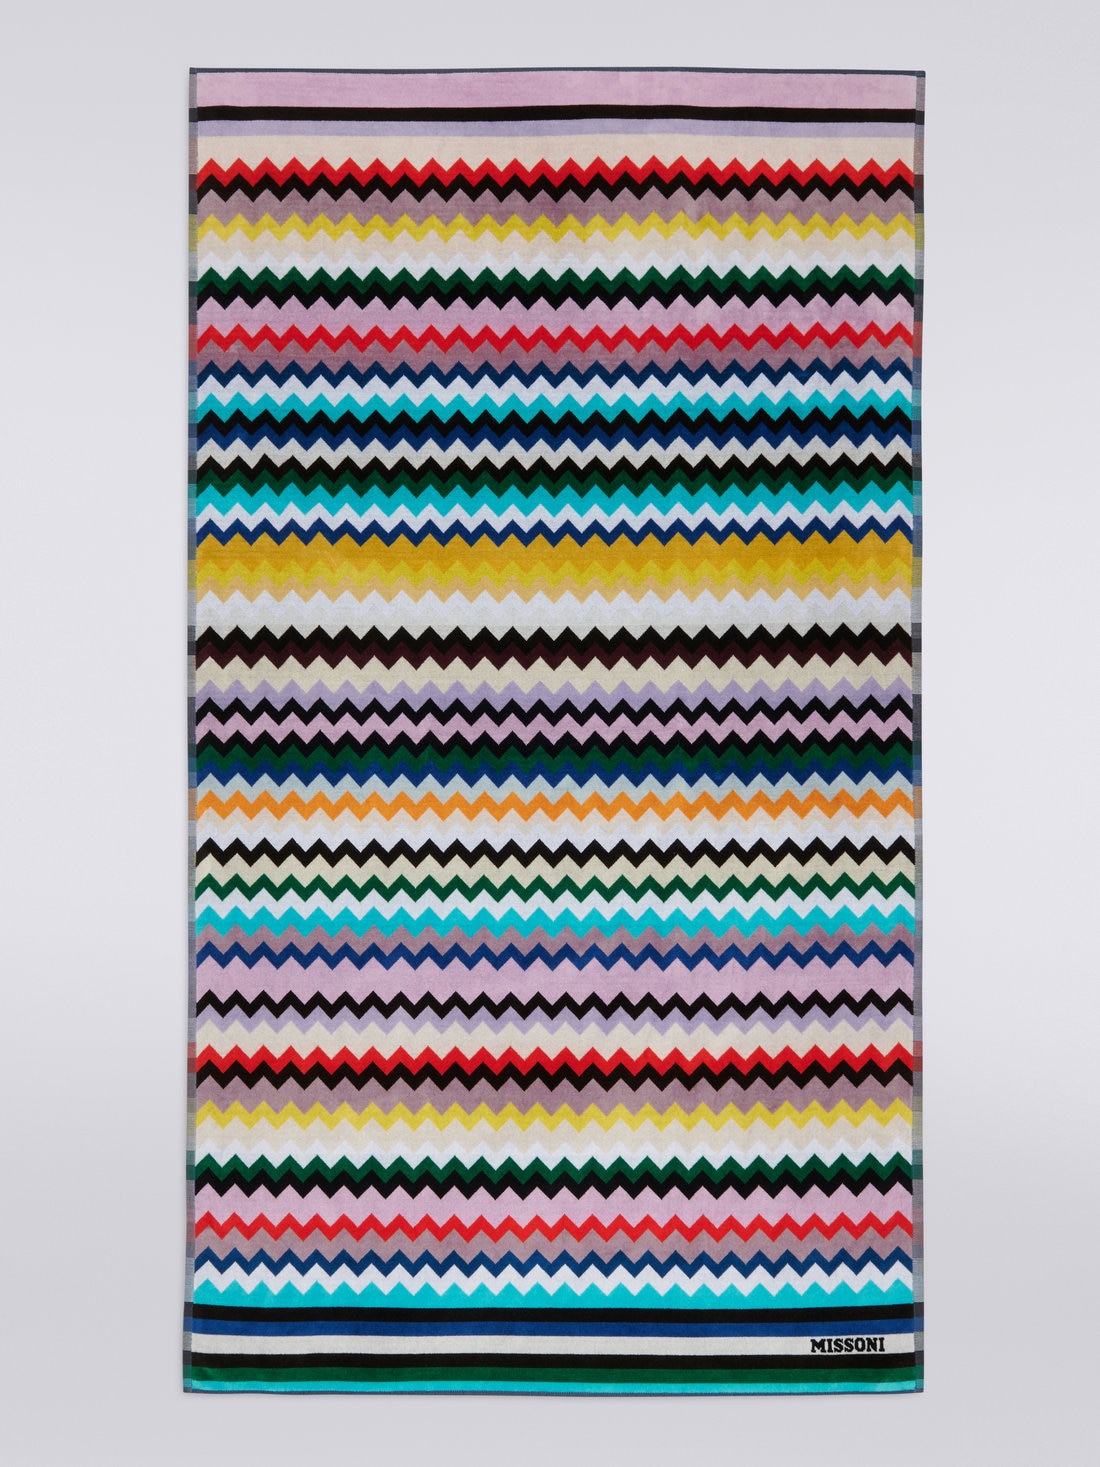 Strandtuch Carlie 100x180 cm aus Baumwollfrottee mit Chevronmuster, Mehrfarbig  - 8051575843389 - 1